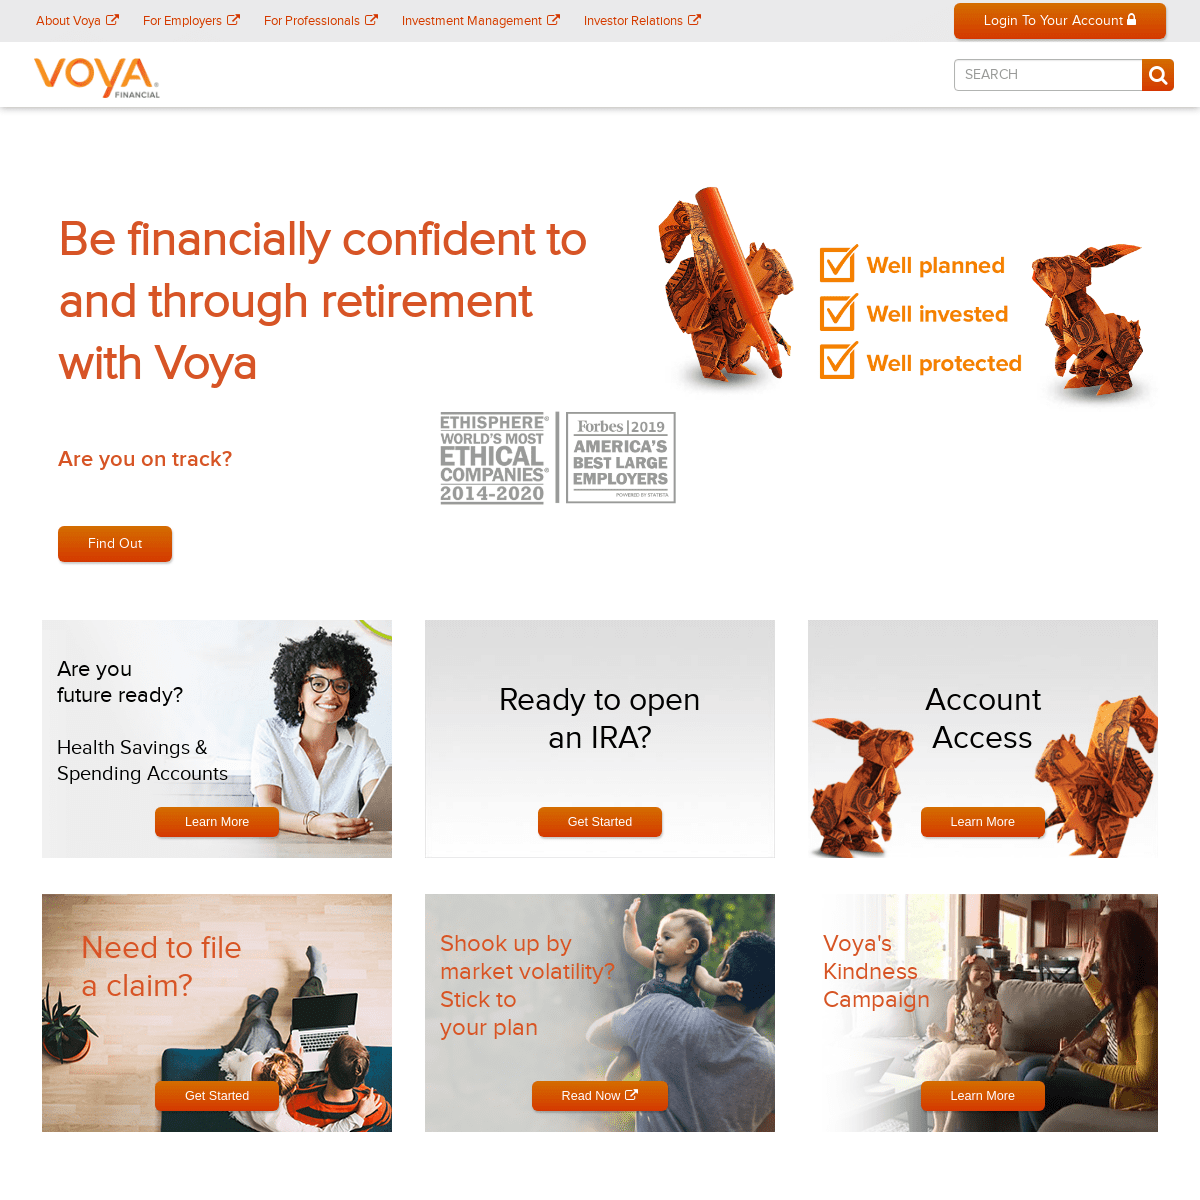 A complete backup of voya.com